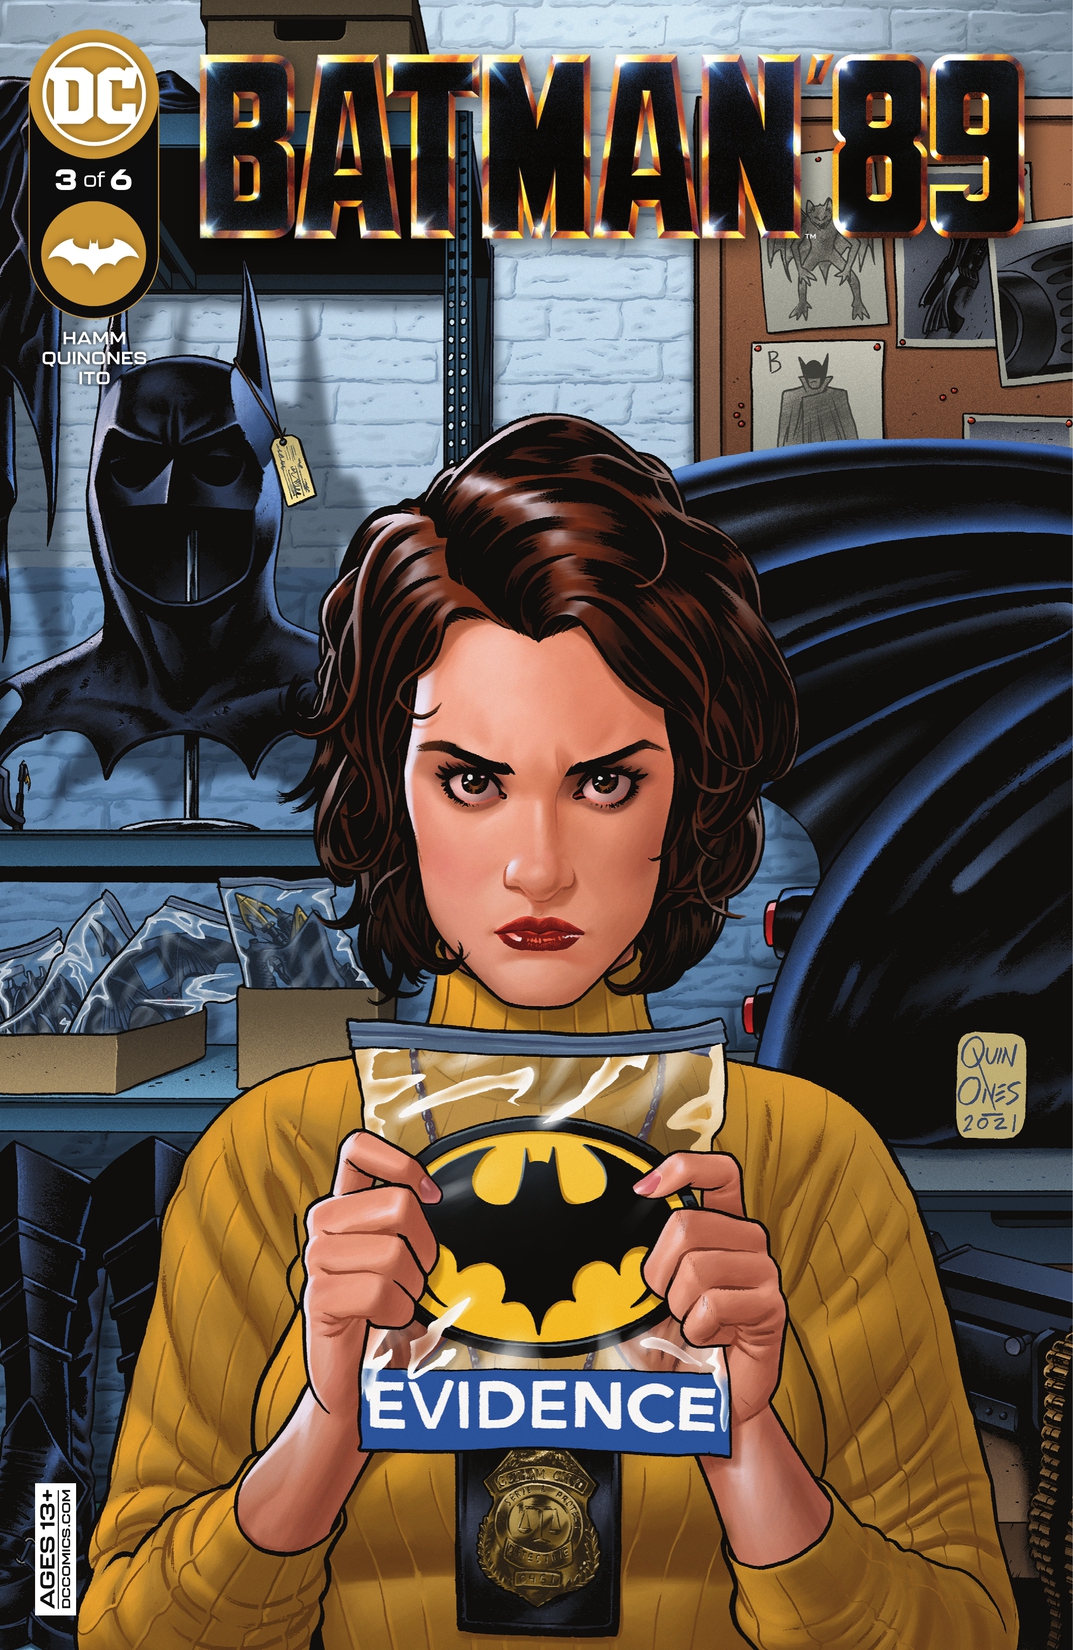 Batman '89 #3 preview images